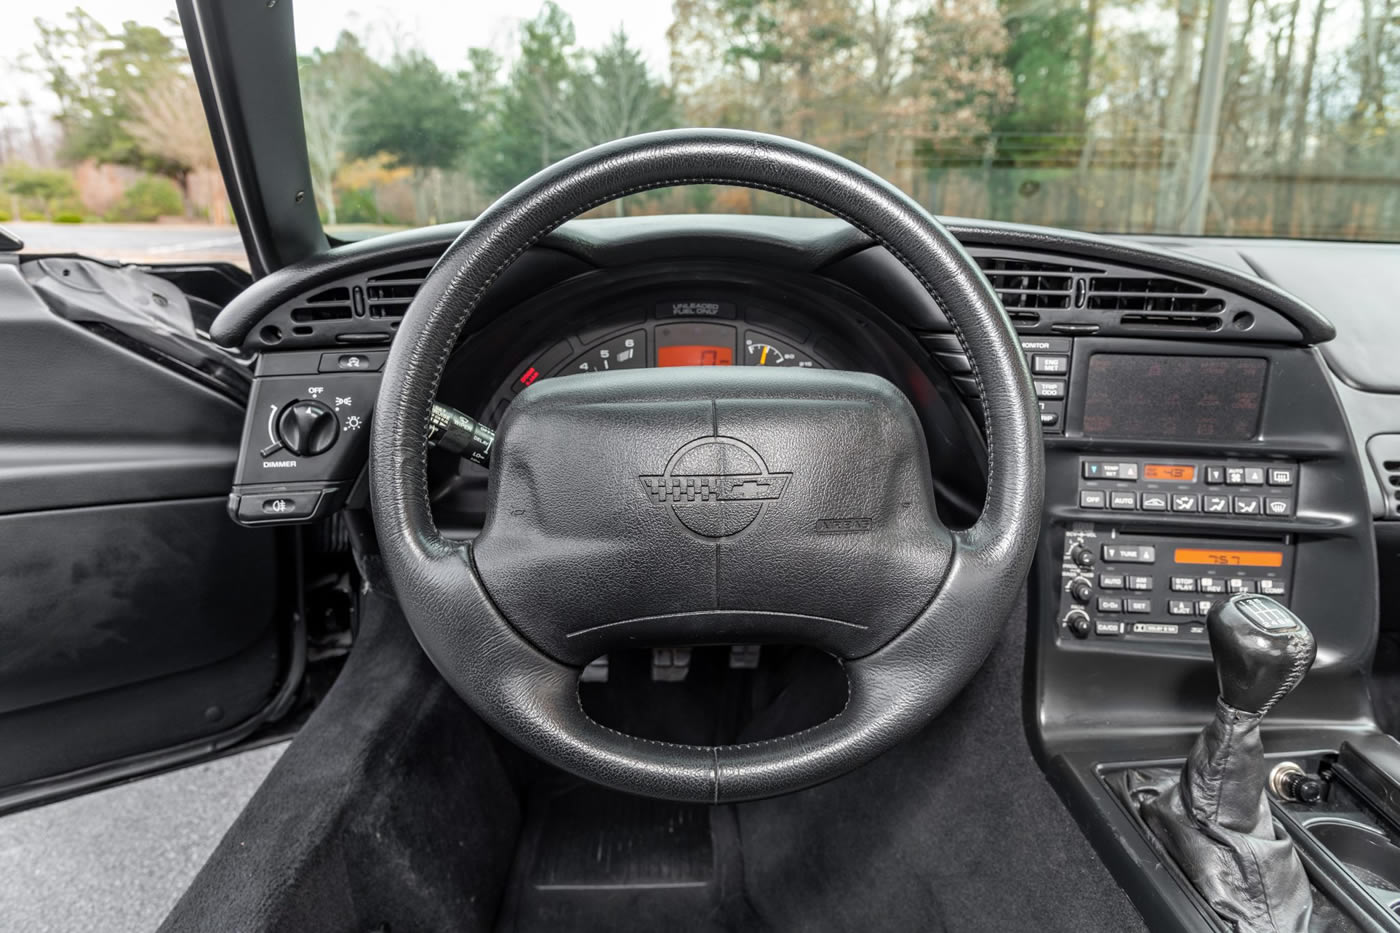 1995 Corvette Coupe in Black